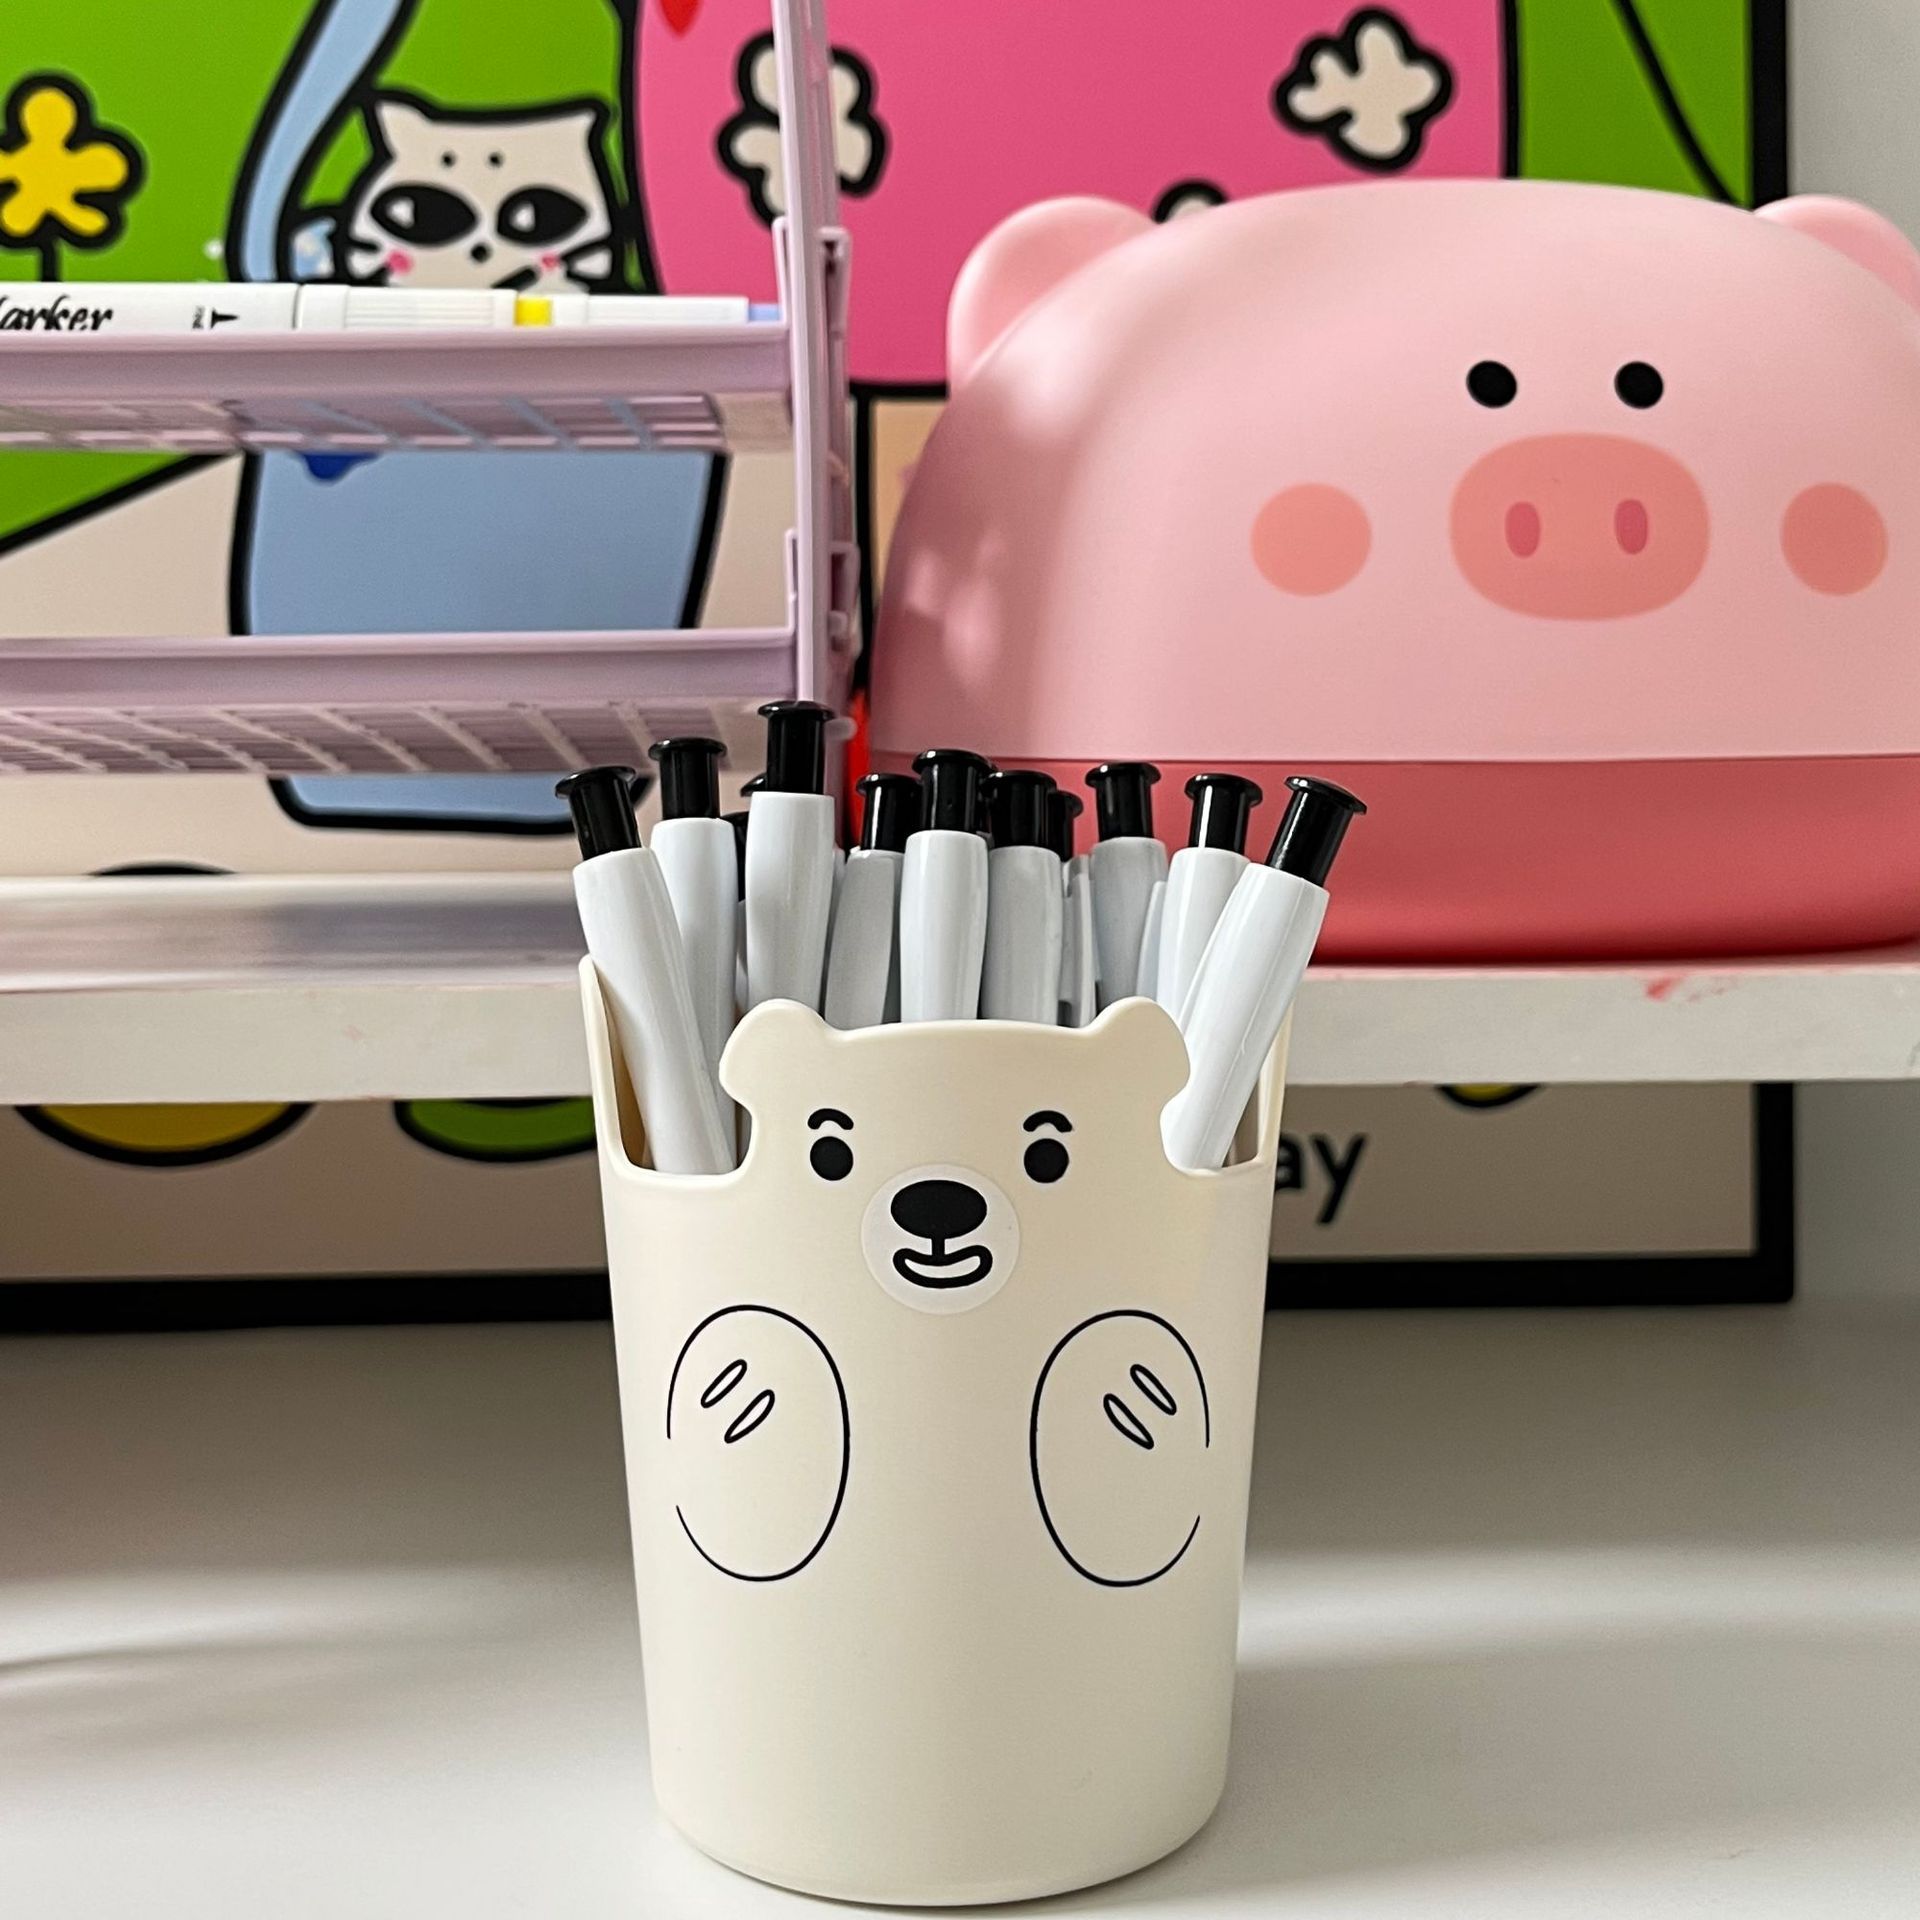 Adorable Bear Pen Holder - Organisateur De Bureau Multifonctionnel Pour Le Bureau, Le Maquillage Et Les Fournitures D’art